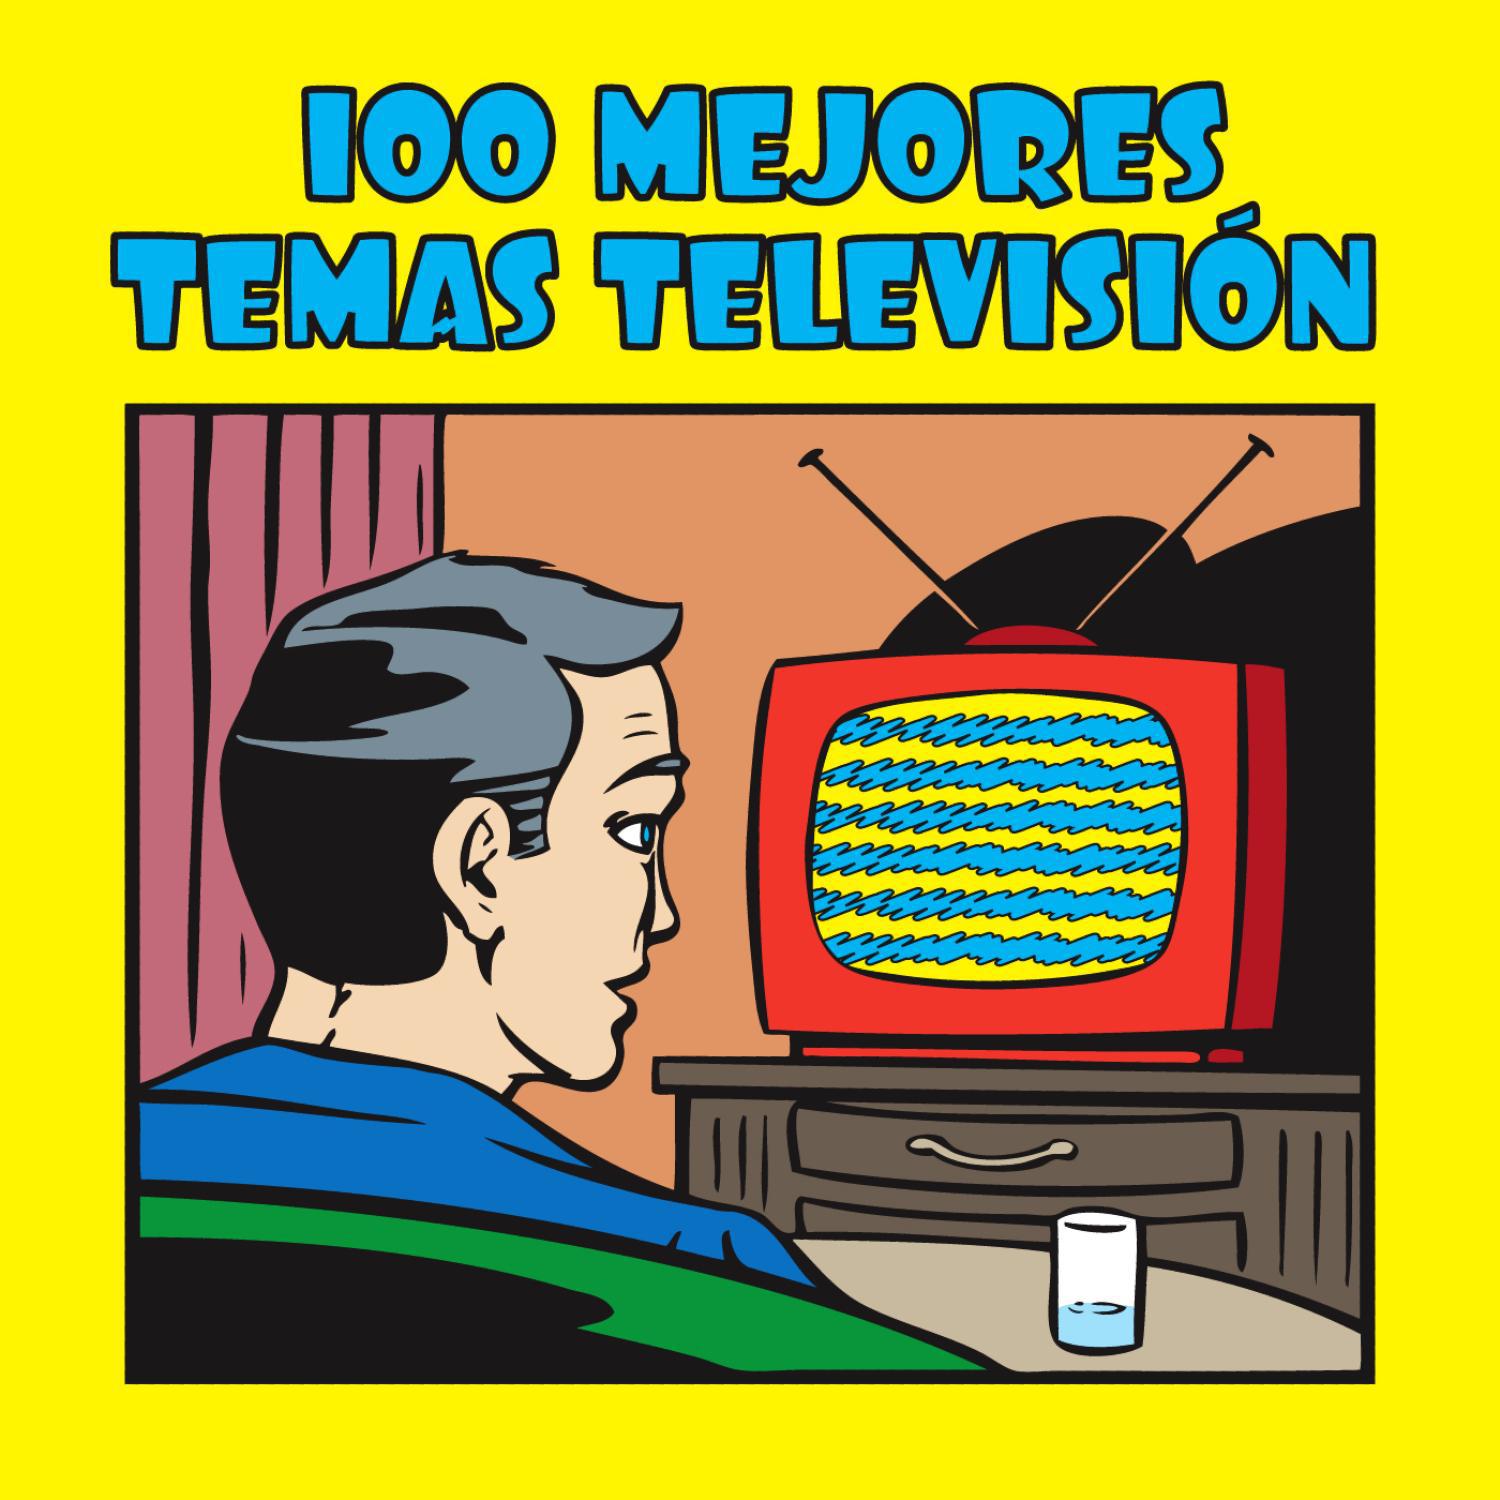 100 Mejores Temas Televisio n